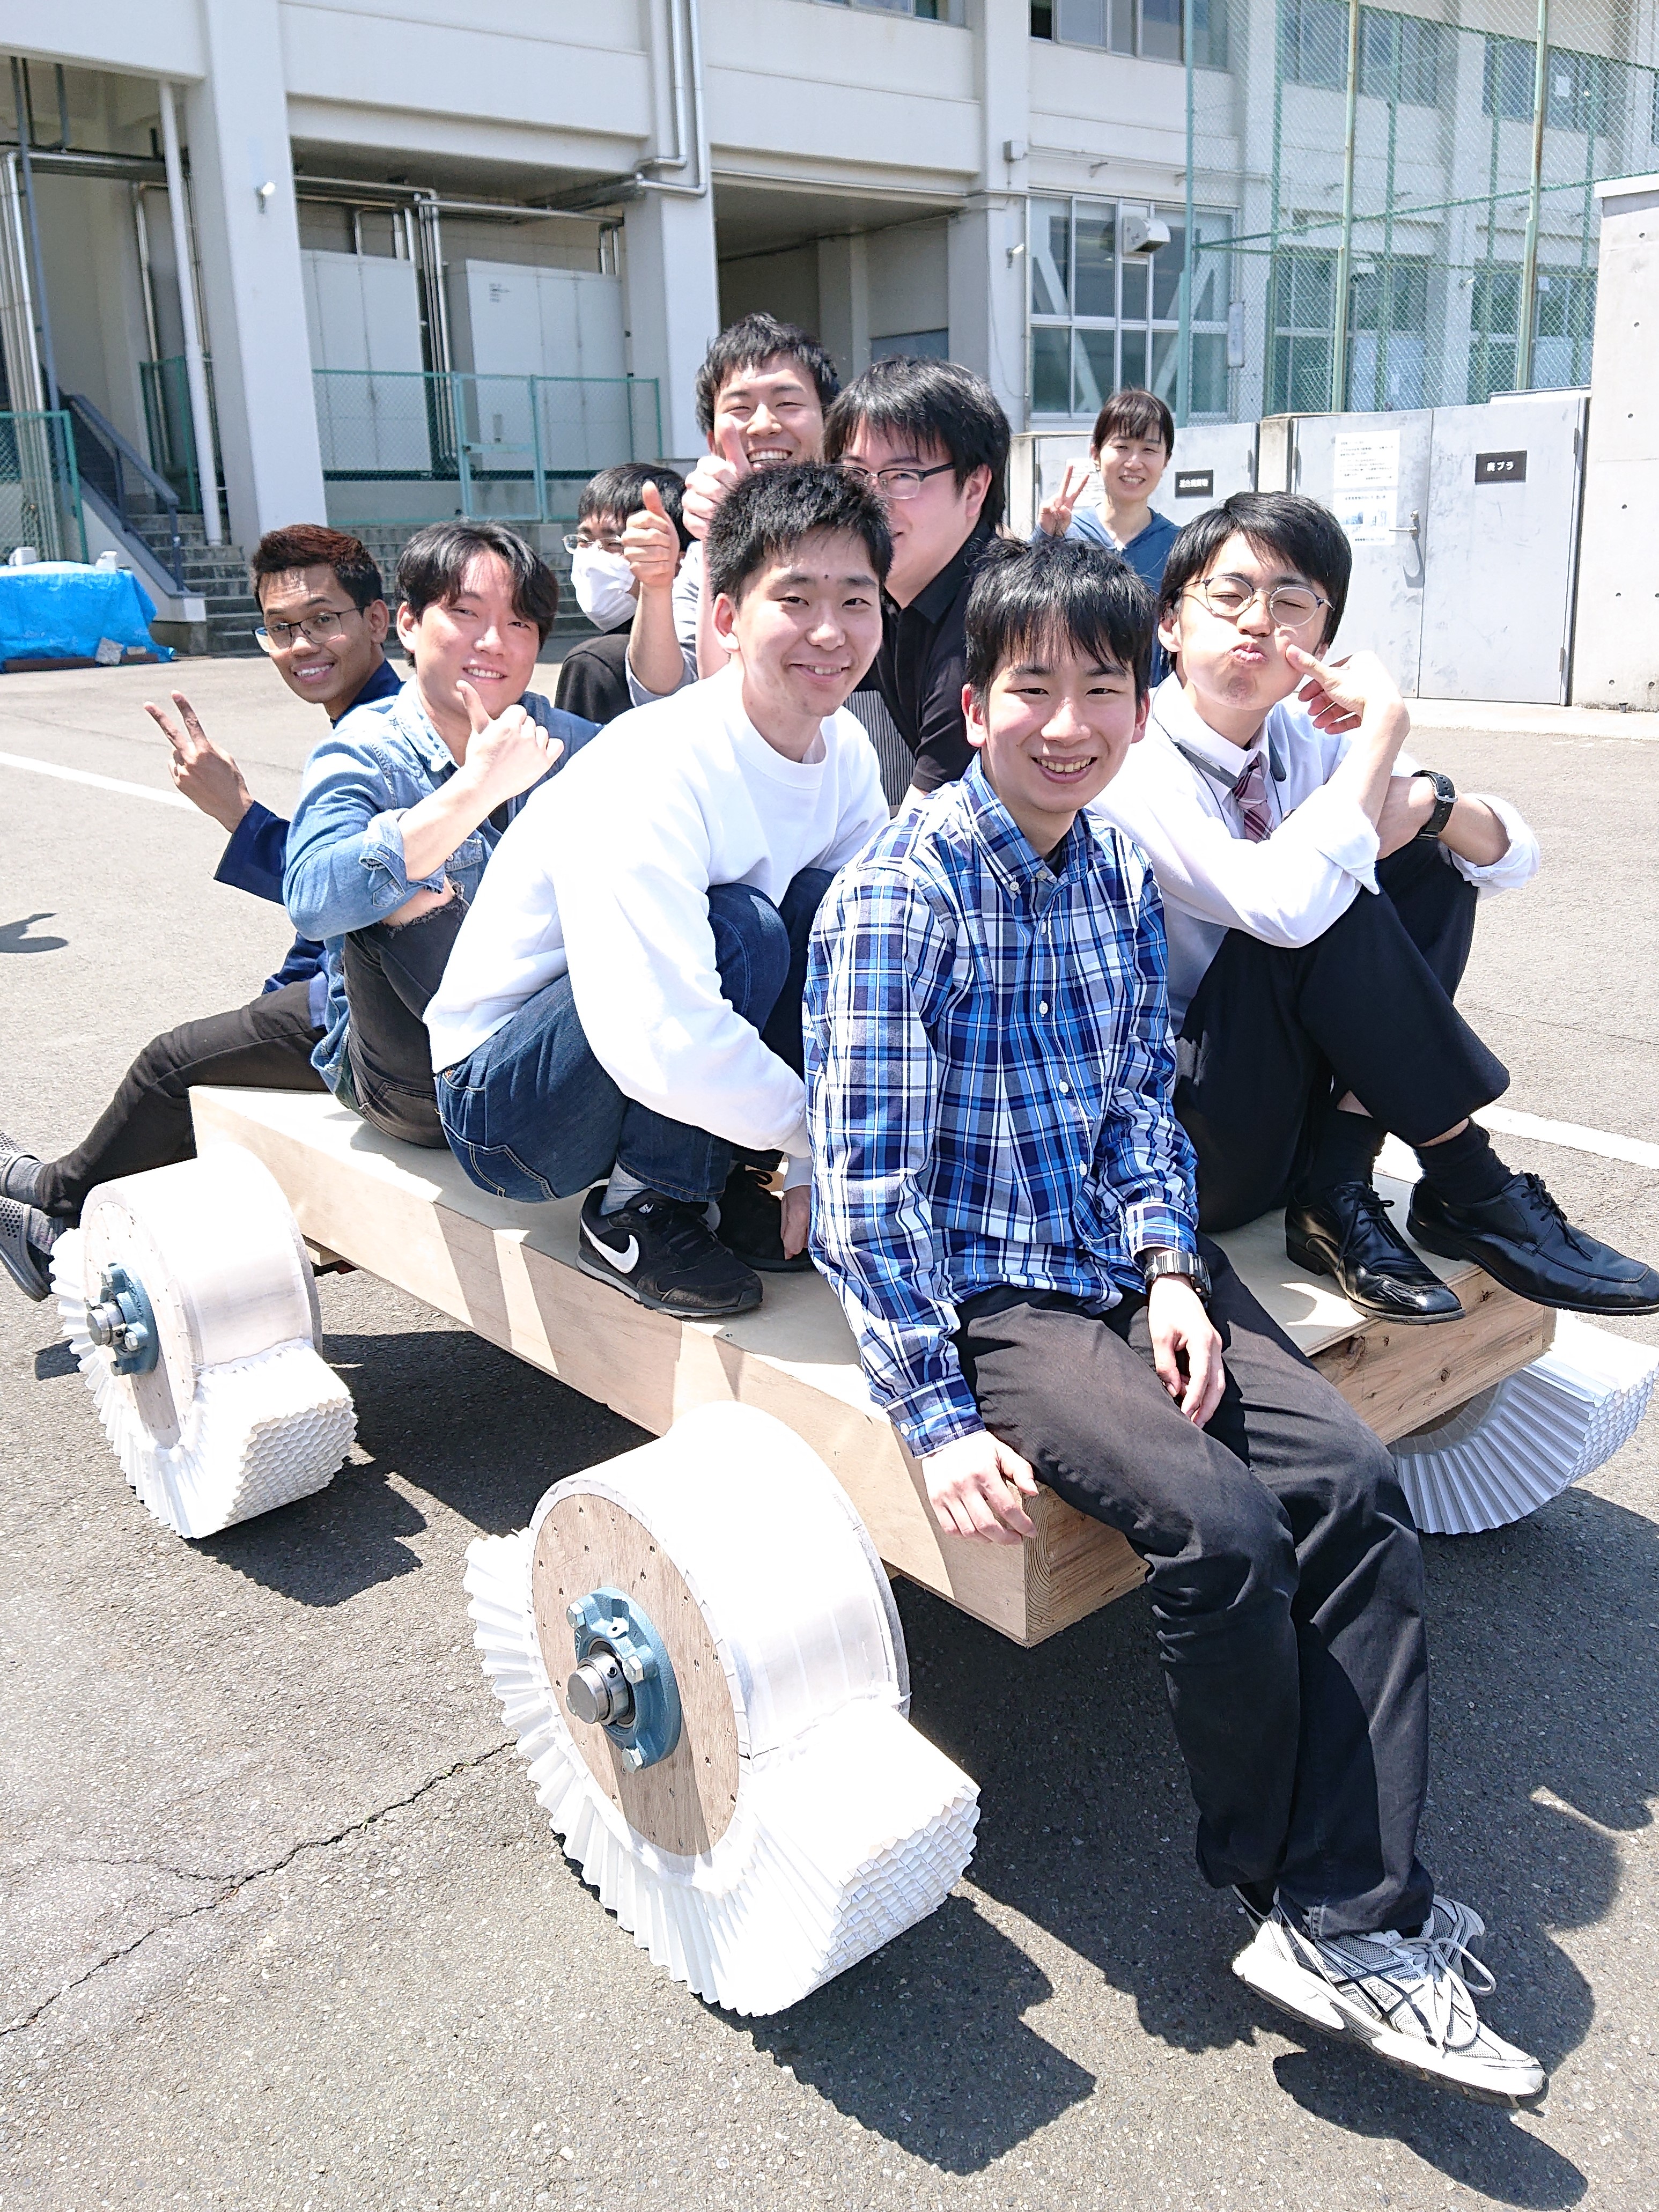 明治大学生田キャンパス(神奈川県川崎市)での折紙タイヤの実験風景です。折紙タイヤを取り付けた台車に学生が一人ずつ乗り、1トン載っても潰れない折紙タイヤができました。